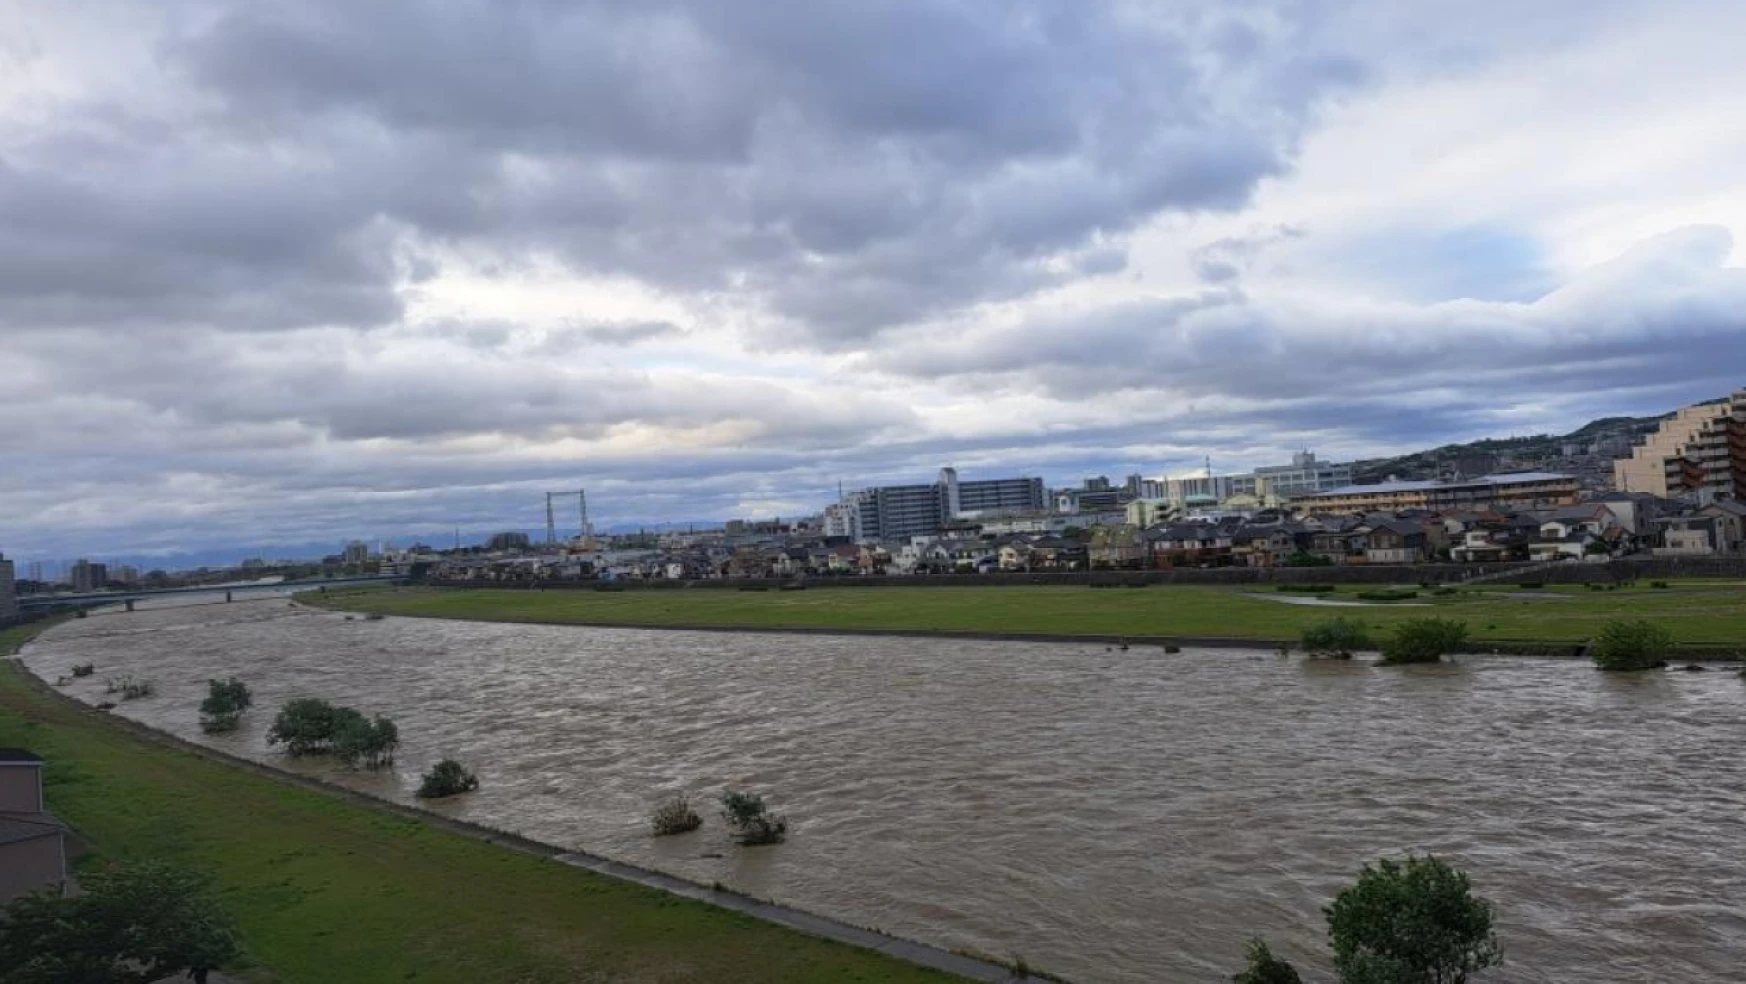 Japonya'da nehirdeki set çöktü, ev ve araçlar sular altında kaldı